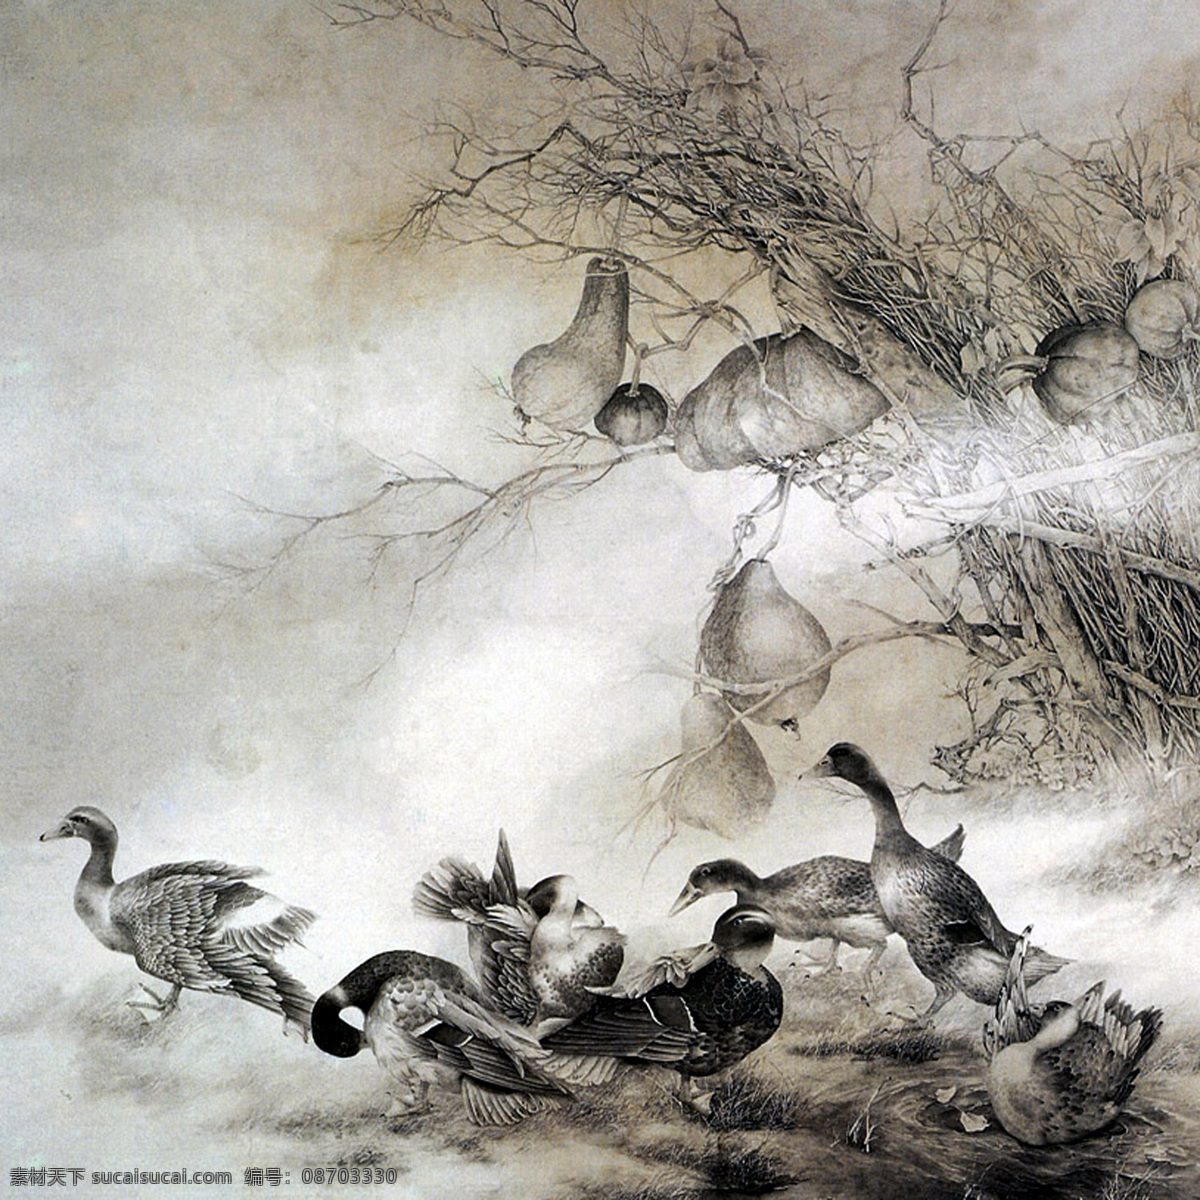 一群 鸭子 国画 一群鸭子 中国画 设计素材 动物画篇 中国画篇 书画美术 灰色